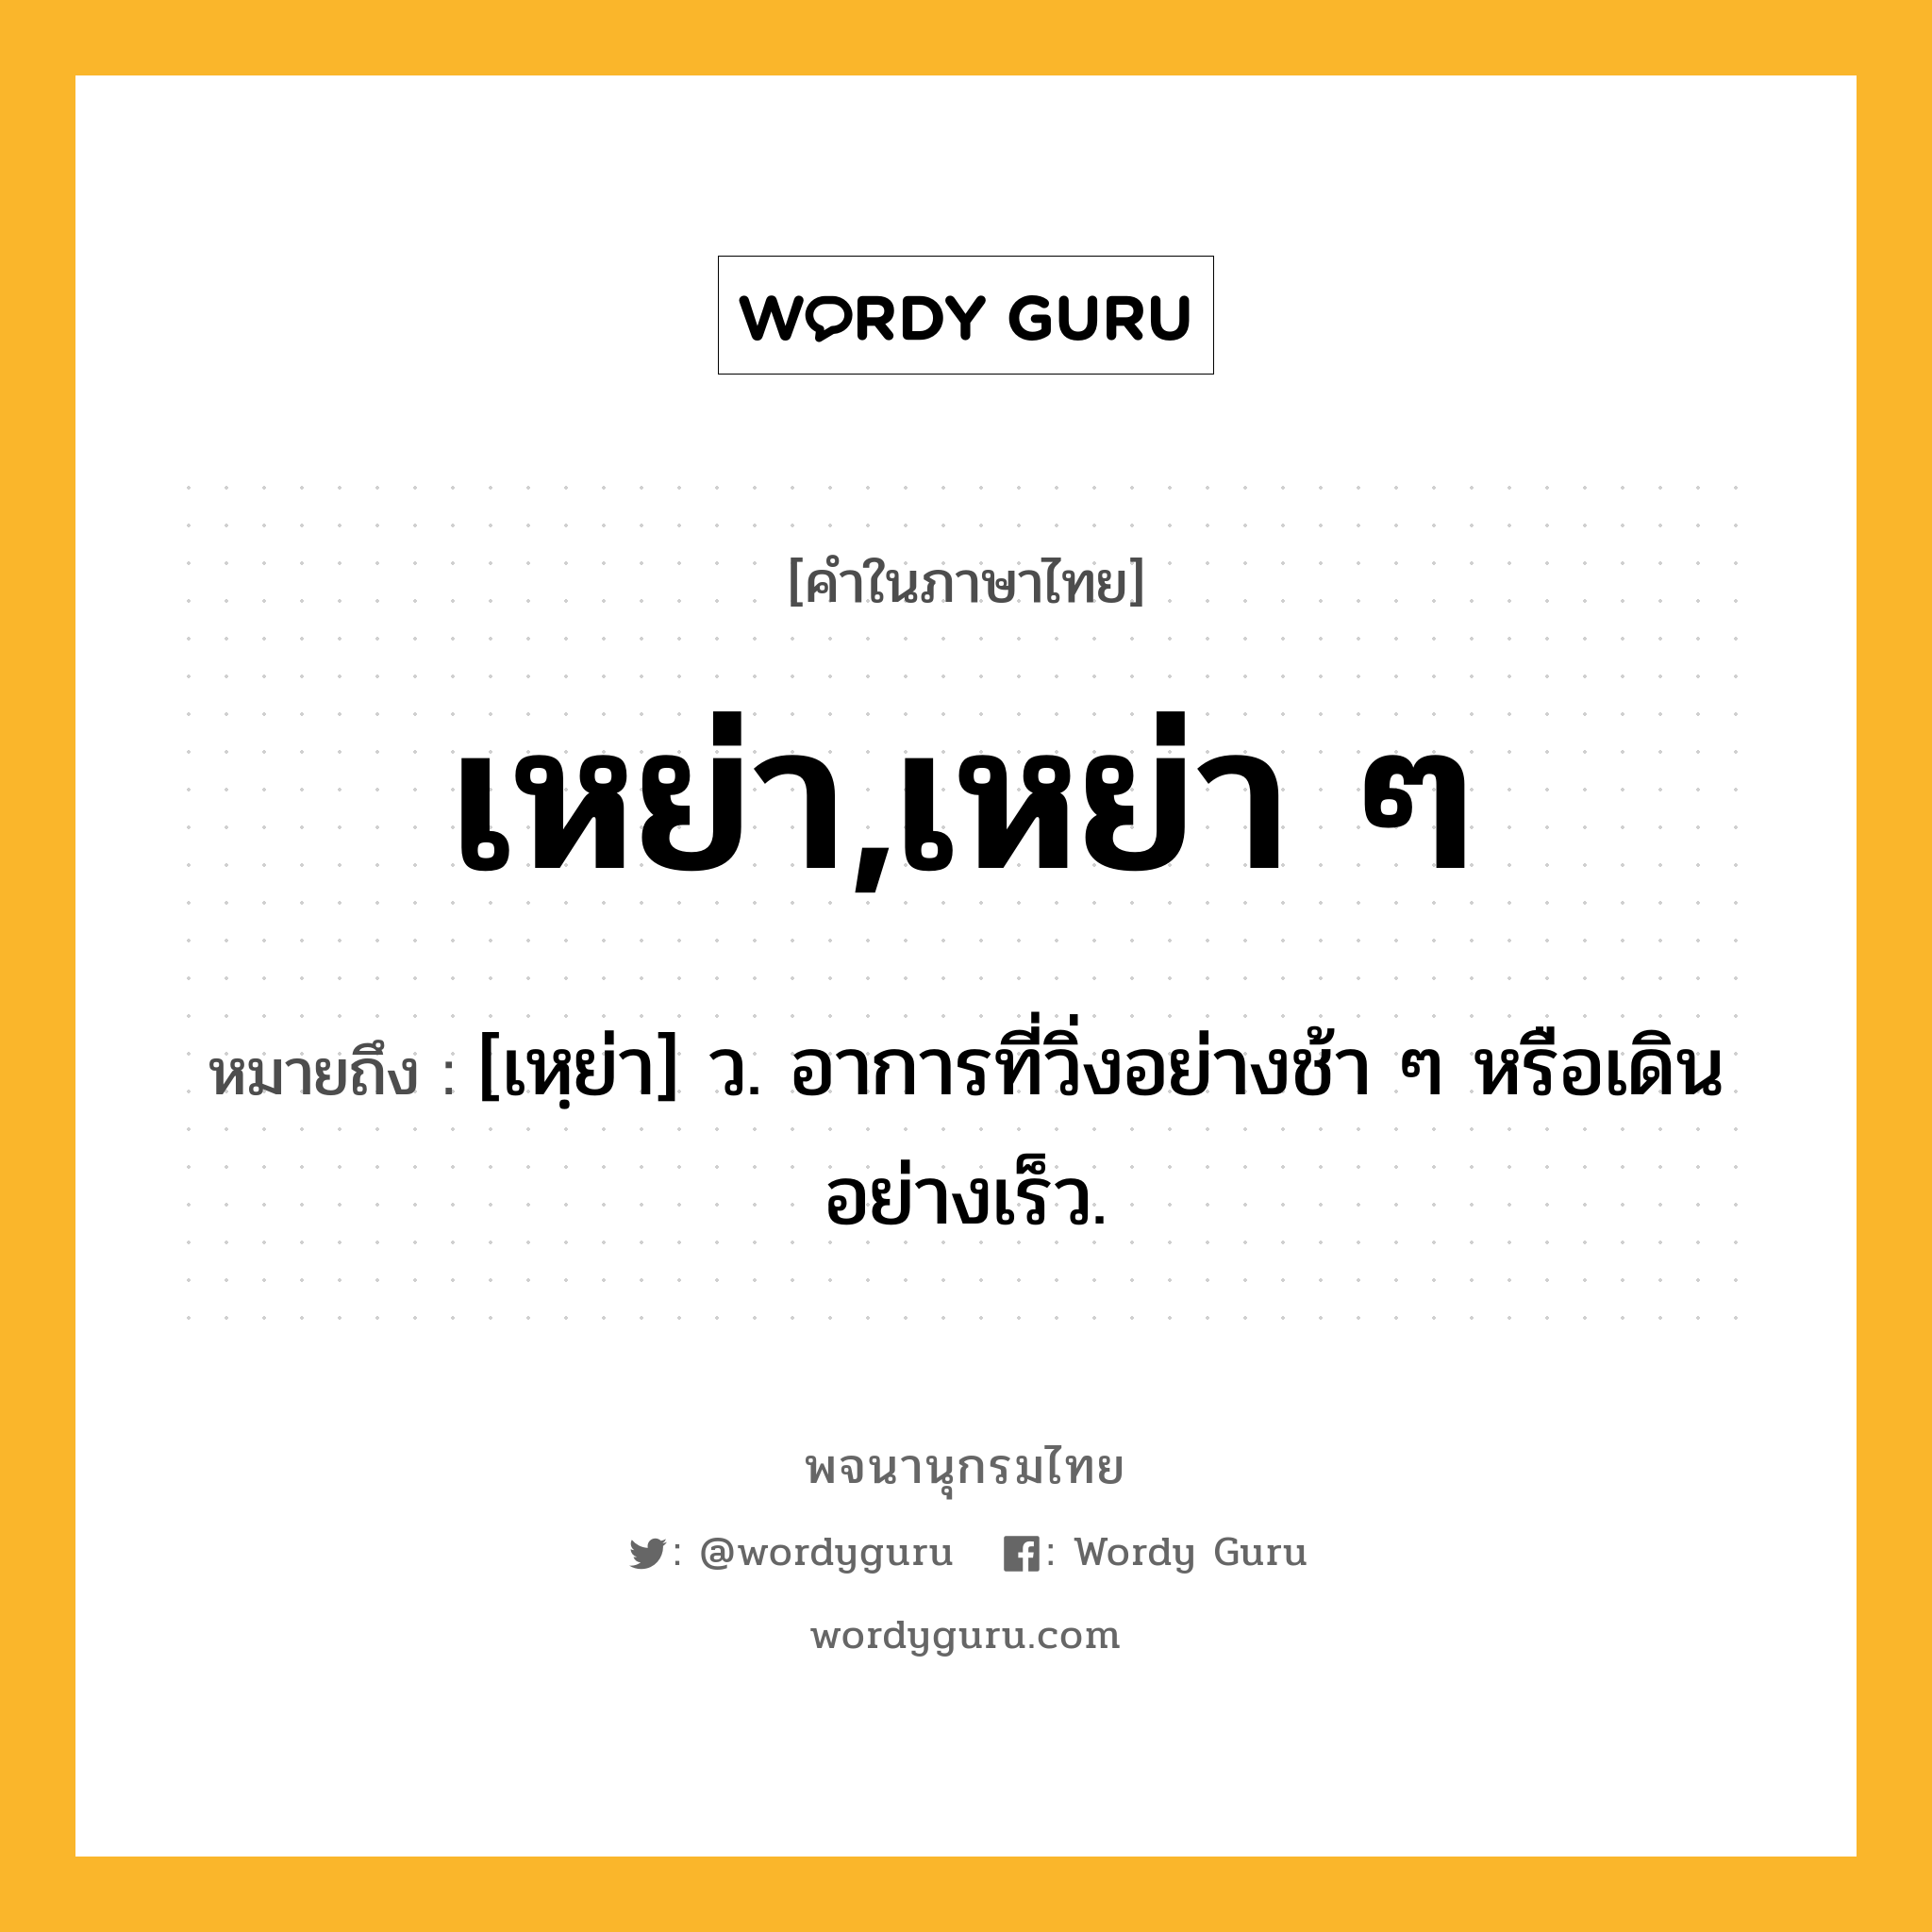 เหย่า,เหย่า ๆ หมายถึงอะไร?, คำในภาษาไทย เหย่า,เหย่า ๆ หมายถึง [เหฺย่า] ว. อาการที่วิ่งอย่างช้า ๆ หรือเดินอย่างเร็ว.